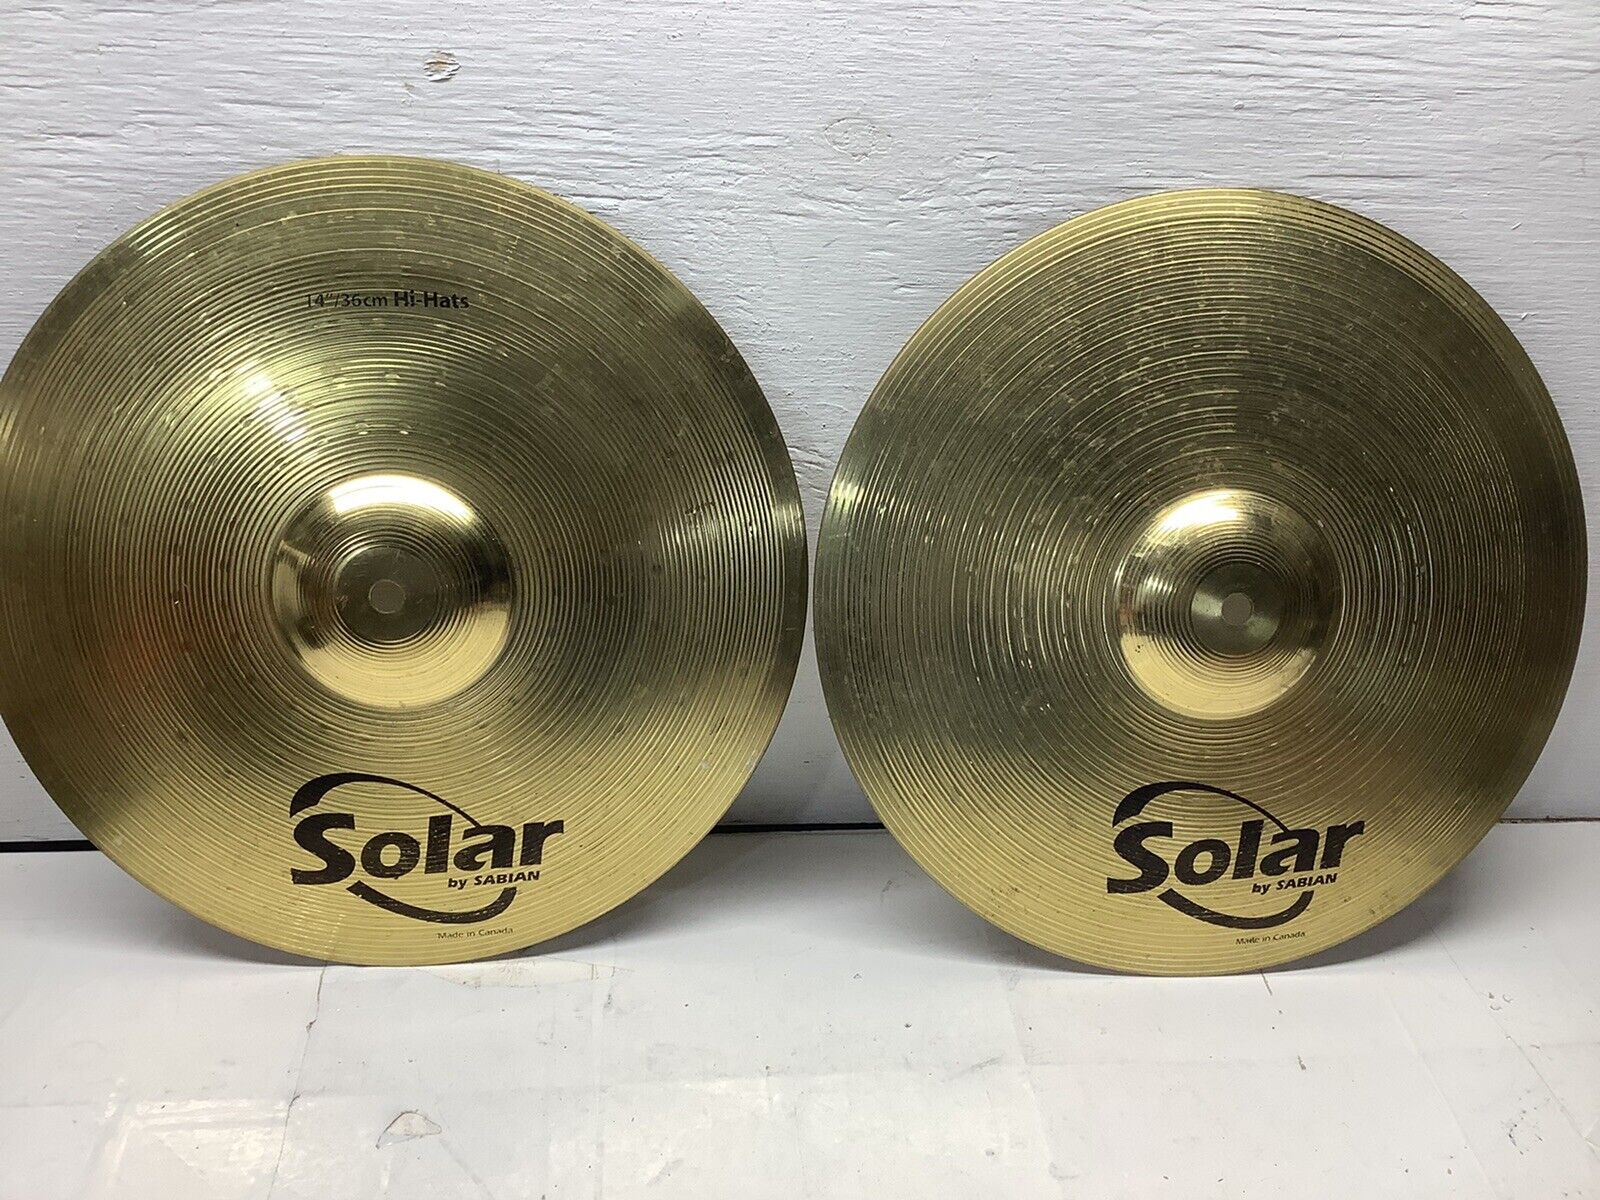 Solar By Sabian Hi Hats 14”/35cm Hi Hat Cymbals (pair) Drum Accessory